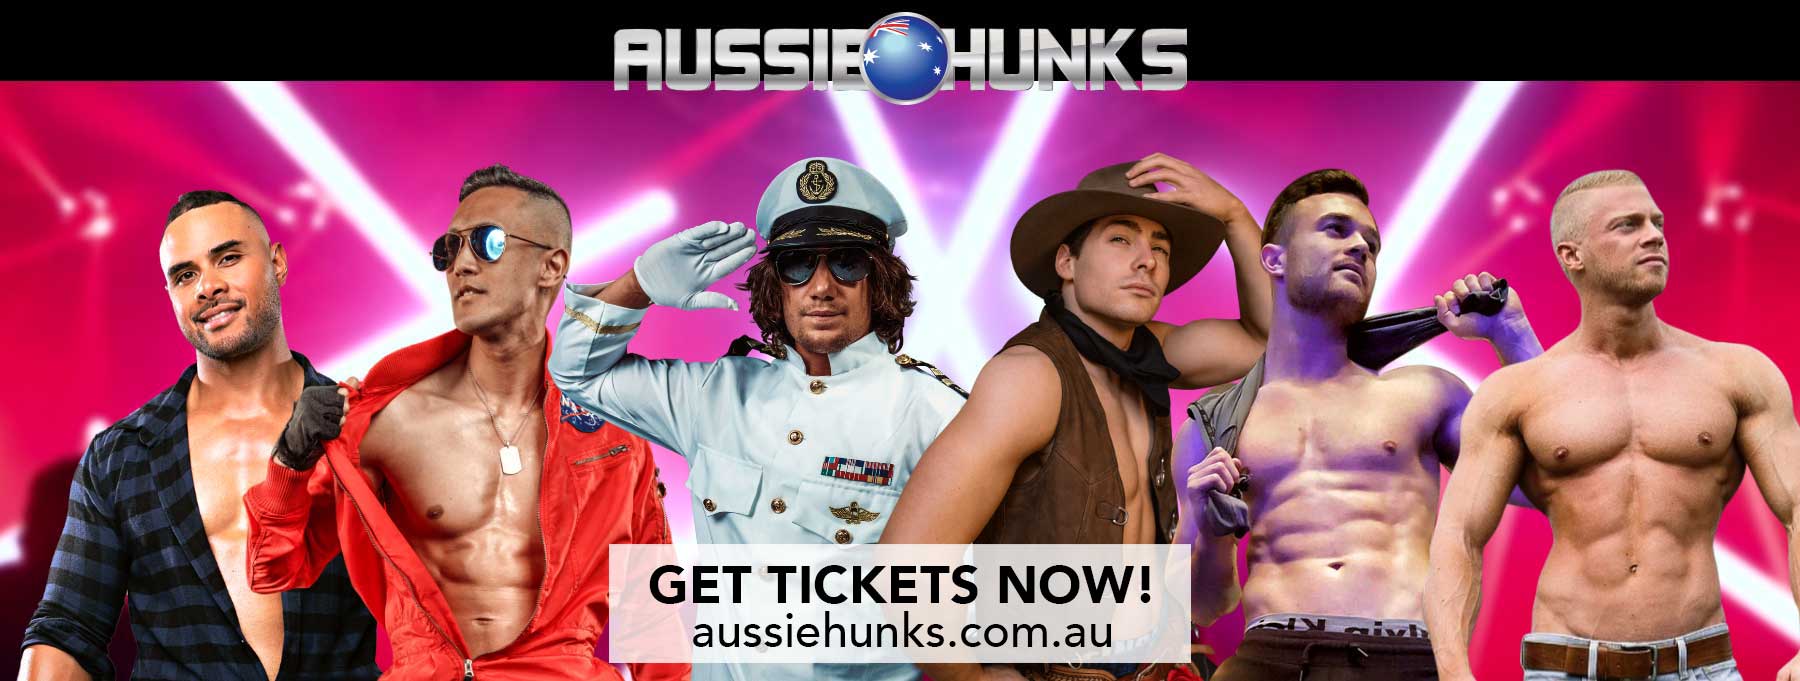 Maxine's Aussie Hunks get tickets banner